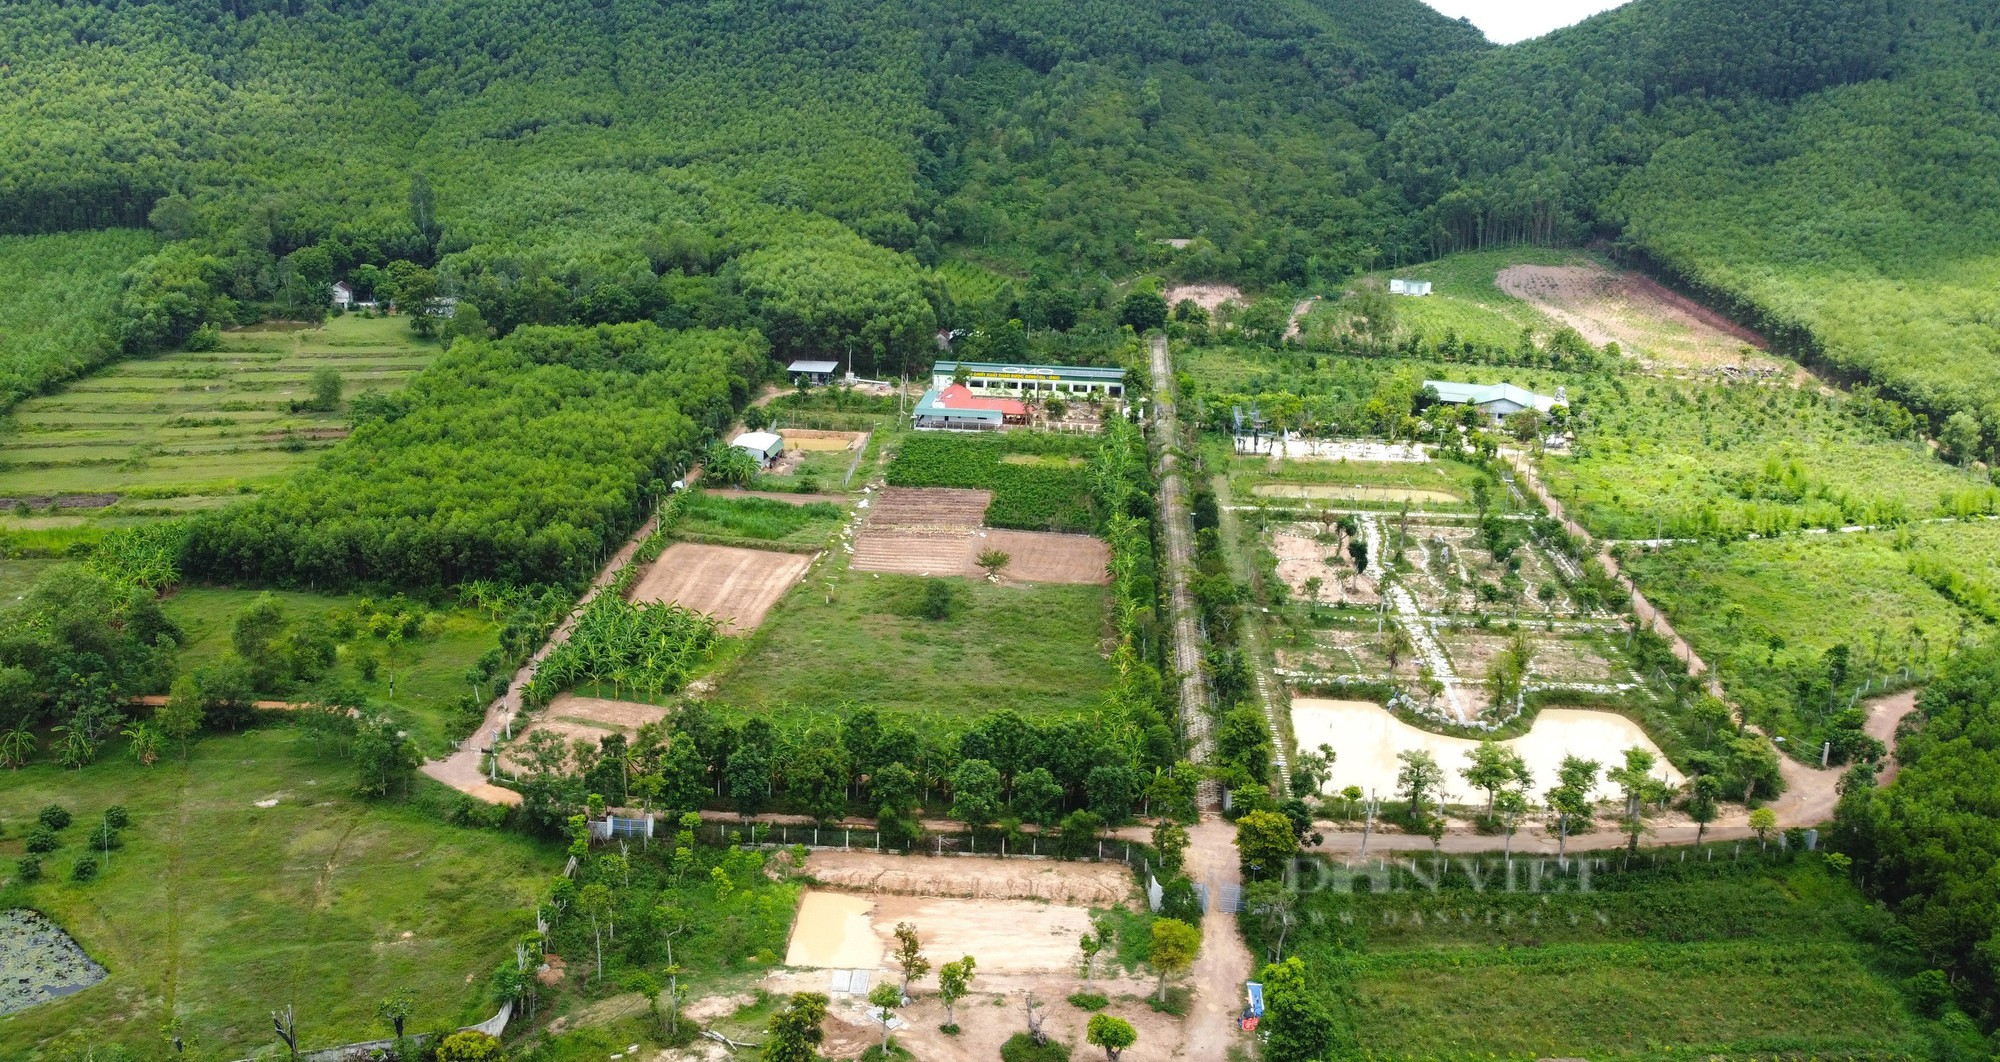 Cận cảnh khu vườn sinh thái thảo dược đẹp như tranh trên núi huyện Yên Thành - Ảnh 4.